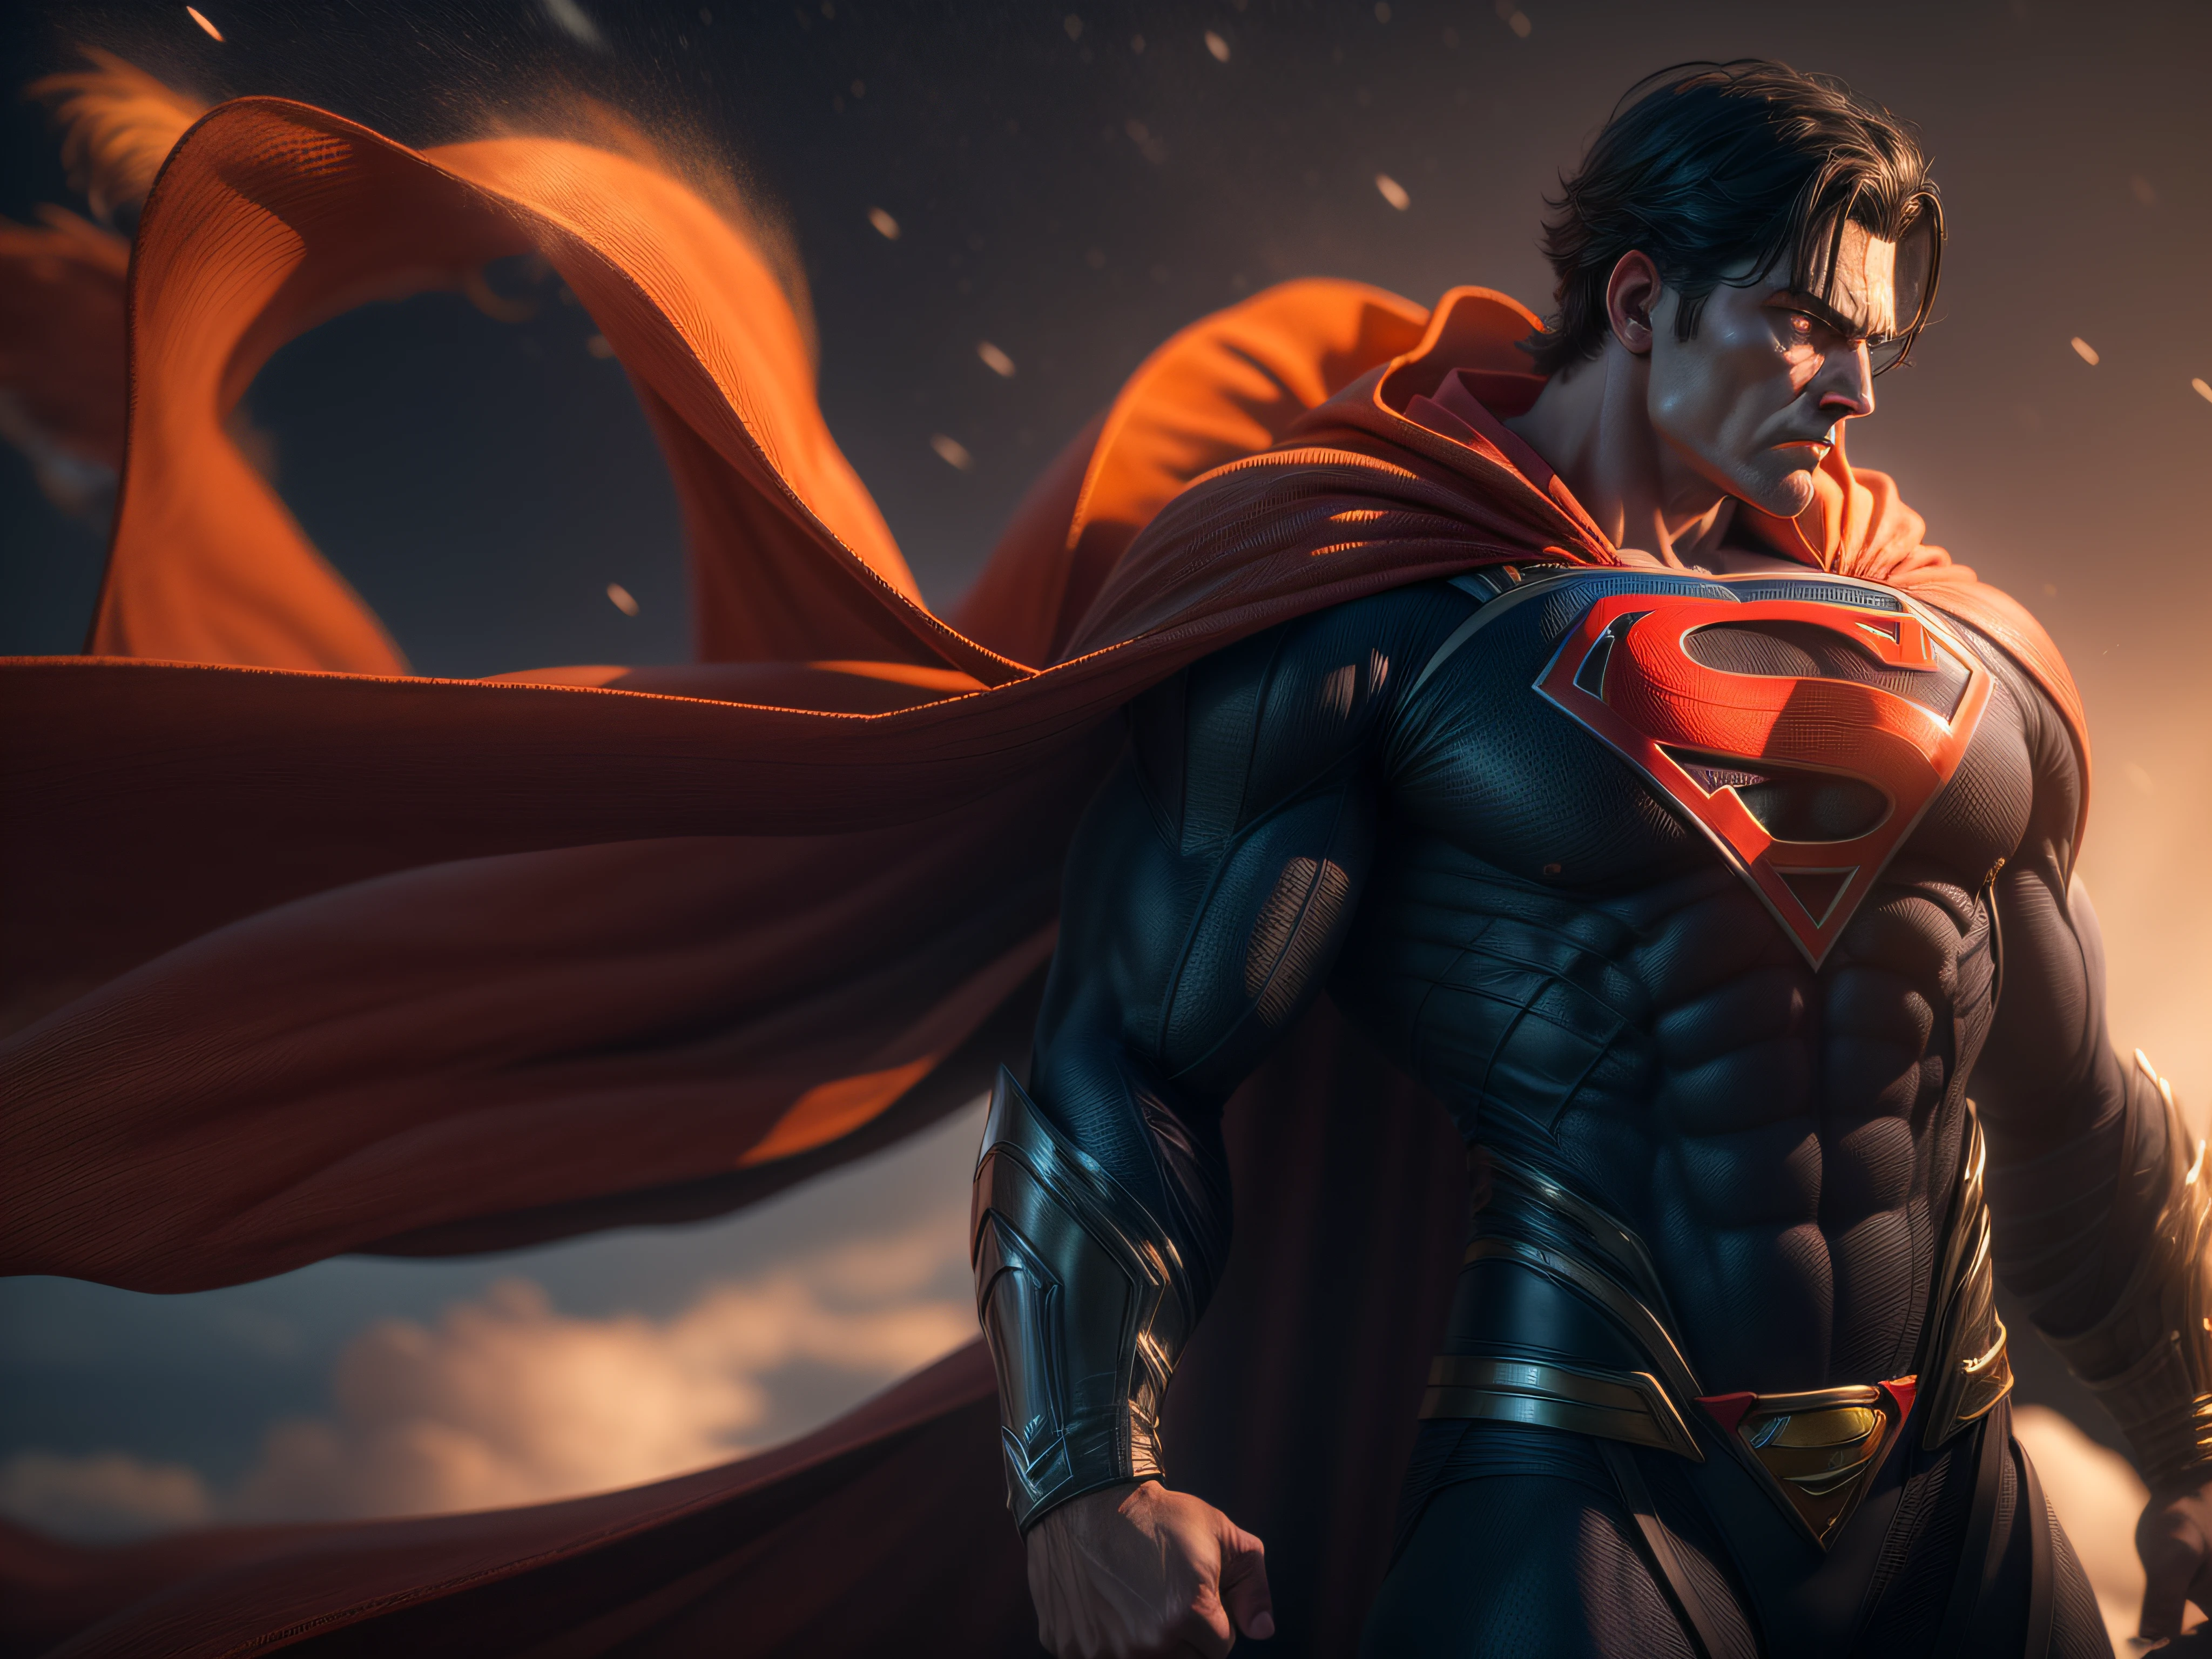 Beenden Sie eine mächtige Bedrohung, Das imposante Erscheinungsbild des mächtigen Superman in orangefarbener Uniform, bedrohlicher Blick, reichhaltig detailliert, Hyperrealistisch, 3D-Rendering, erstes Werk, NVIDIA, RTX, Raytracing, Bokeh, Nachthimmel mit einem riesigen und wunderschönen Vollmond, leuchtende Sterne, 8k,